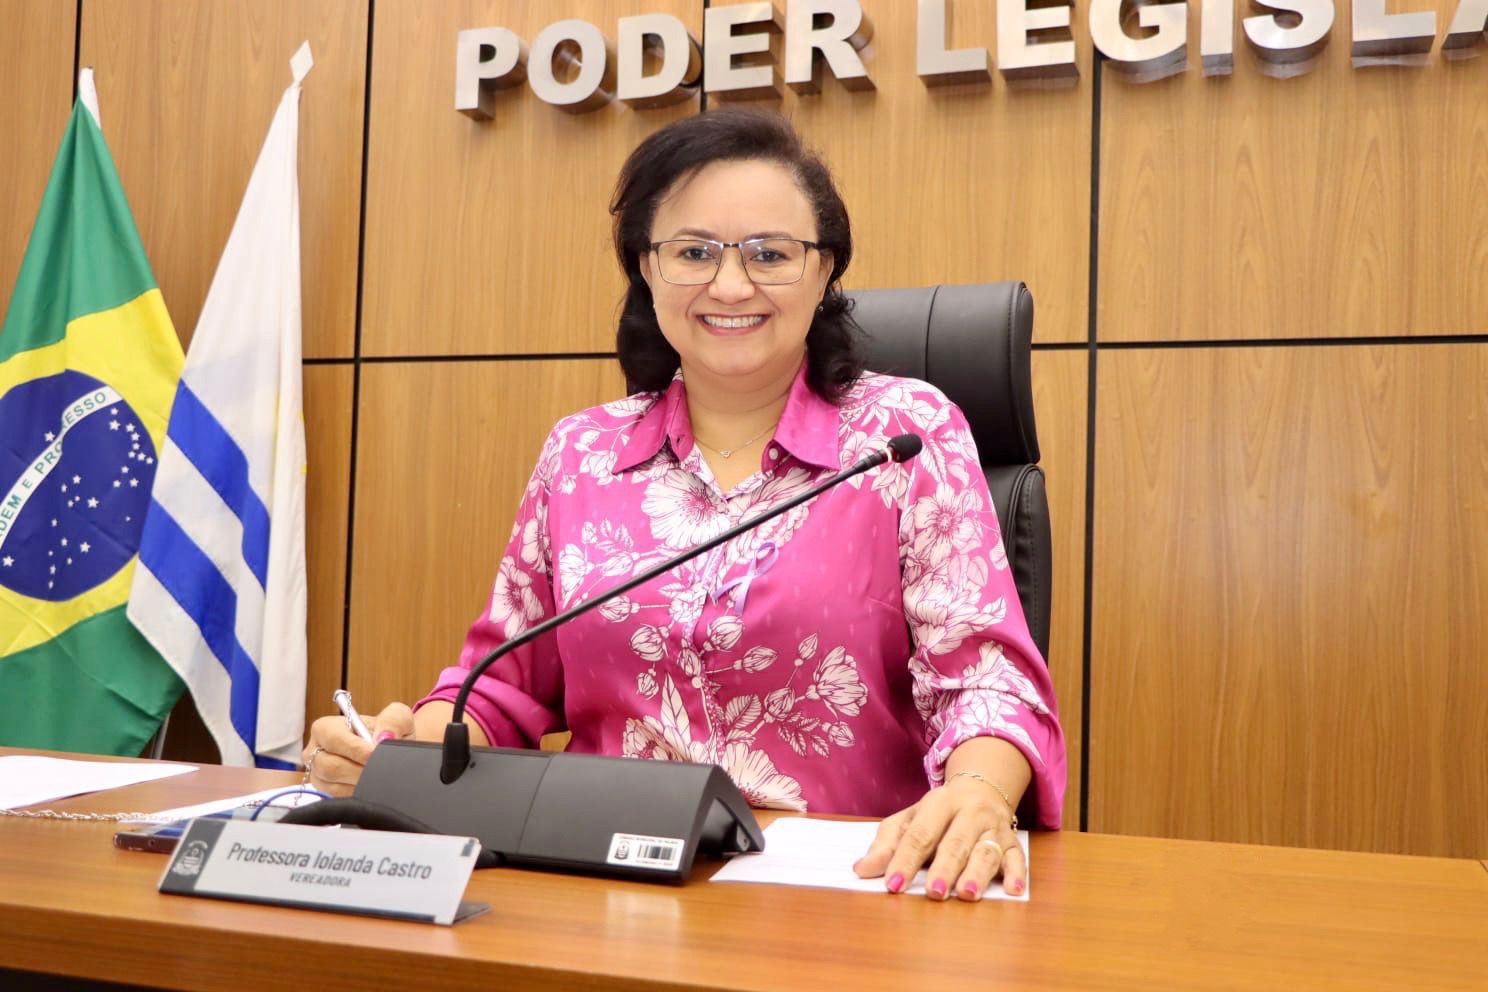 Vereadora Professora Iolanda Castro busca melhorias para a comunidade com requerimento de reforma da praça no setor Bela Vista, em Palmas